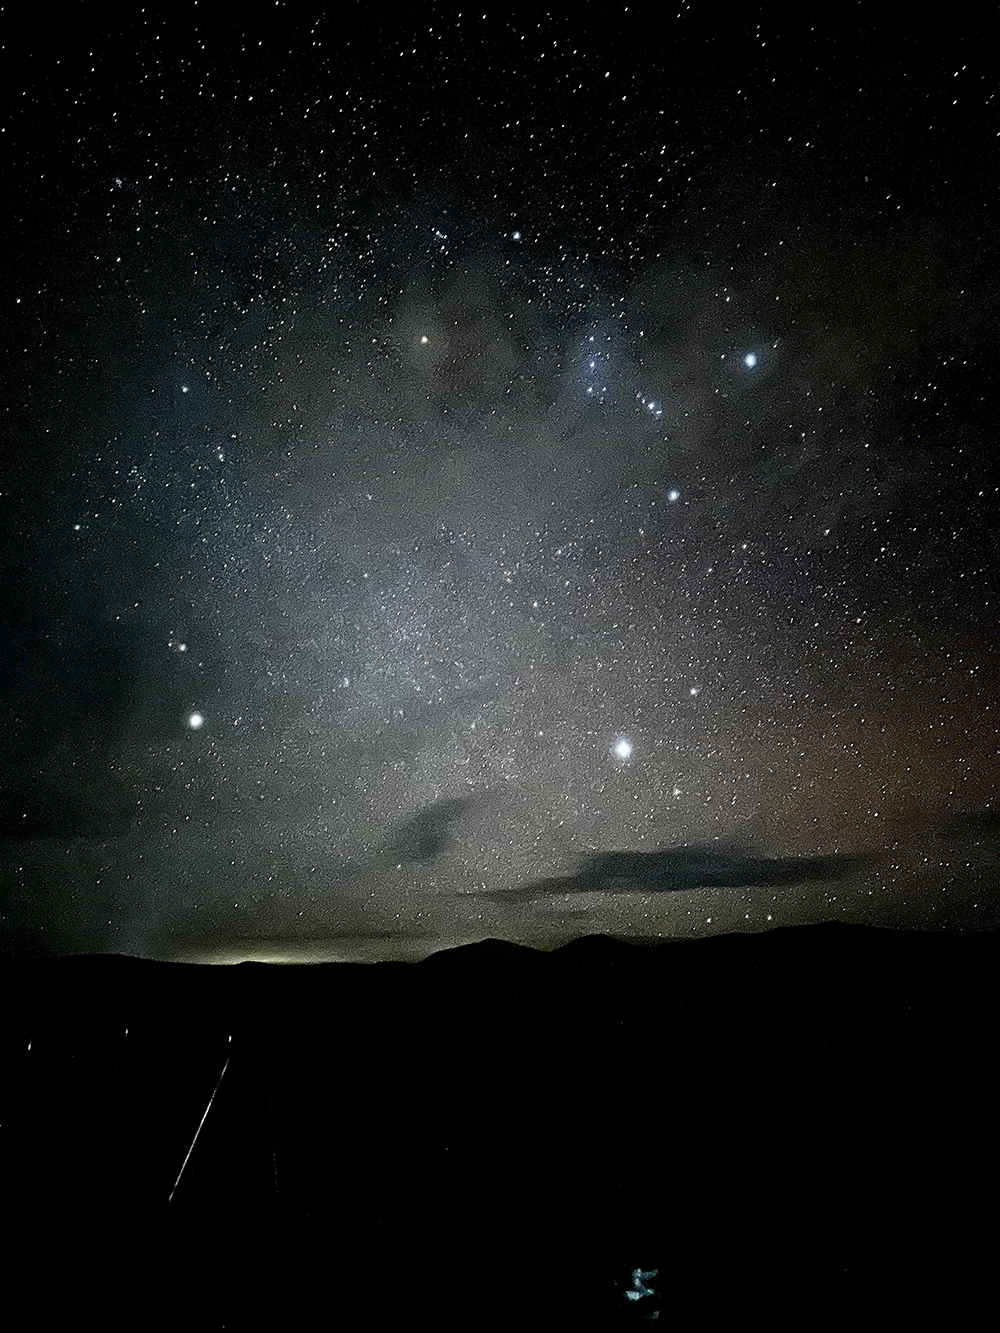 Из-за отсутствия искусственного освещения ночью открывается потрясающее звездное небо. Красивые фотографии можно сделать даже на обычный телефон, используя выдержку и что⁠-⁠то вроде штатива